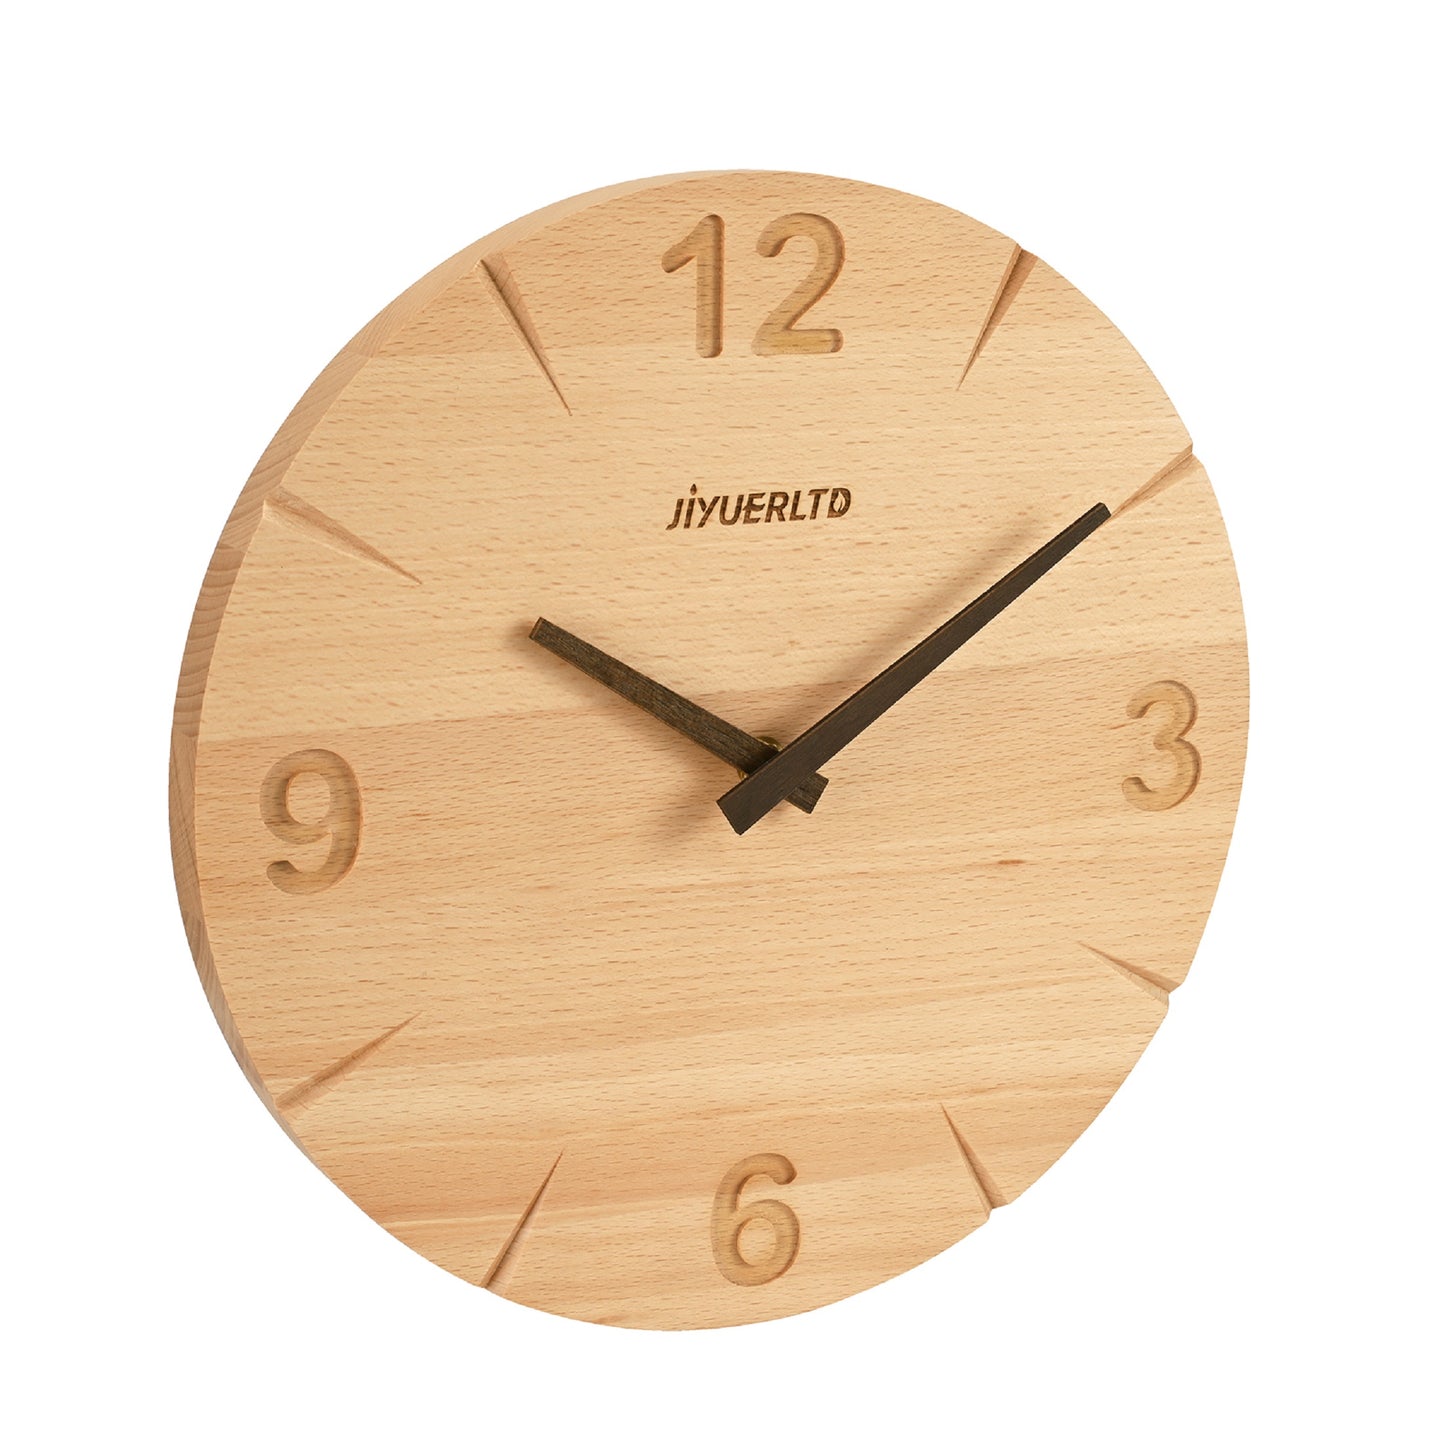 JIYUERLTD Horloge Moderne en Bois Massif - Horloge Murale Silencieuse de 12 ", Horloge décorative pour Chambre à Coucher, Salon, Cuisine, Bureau et Hôtel 